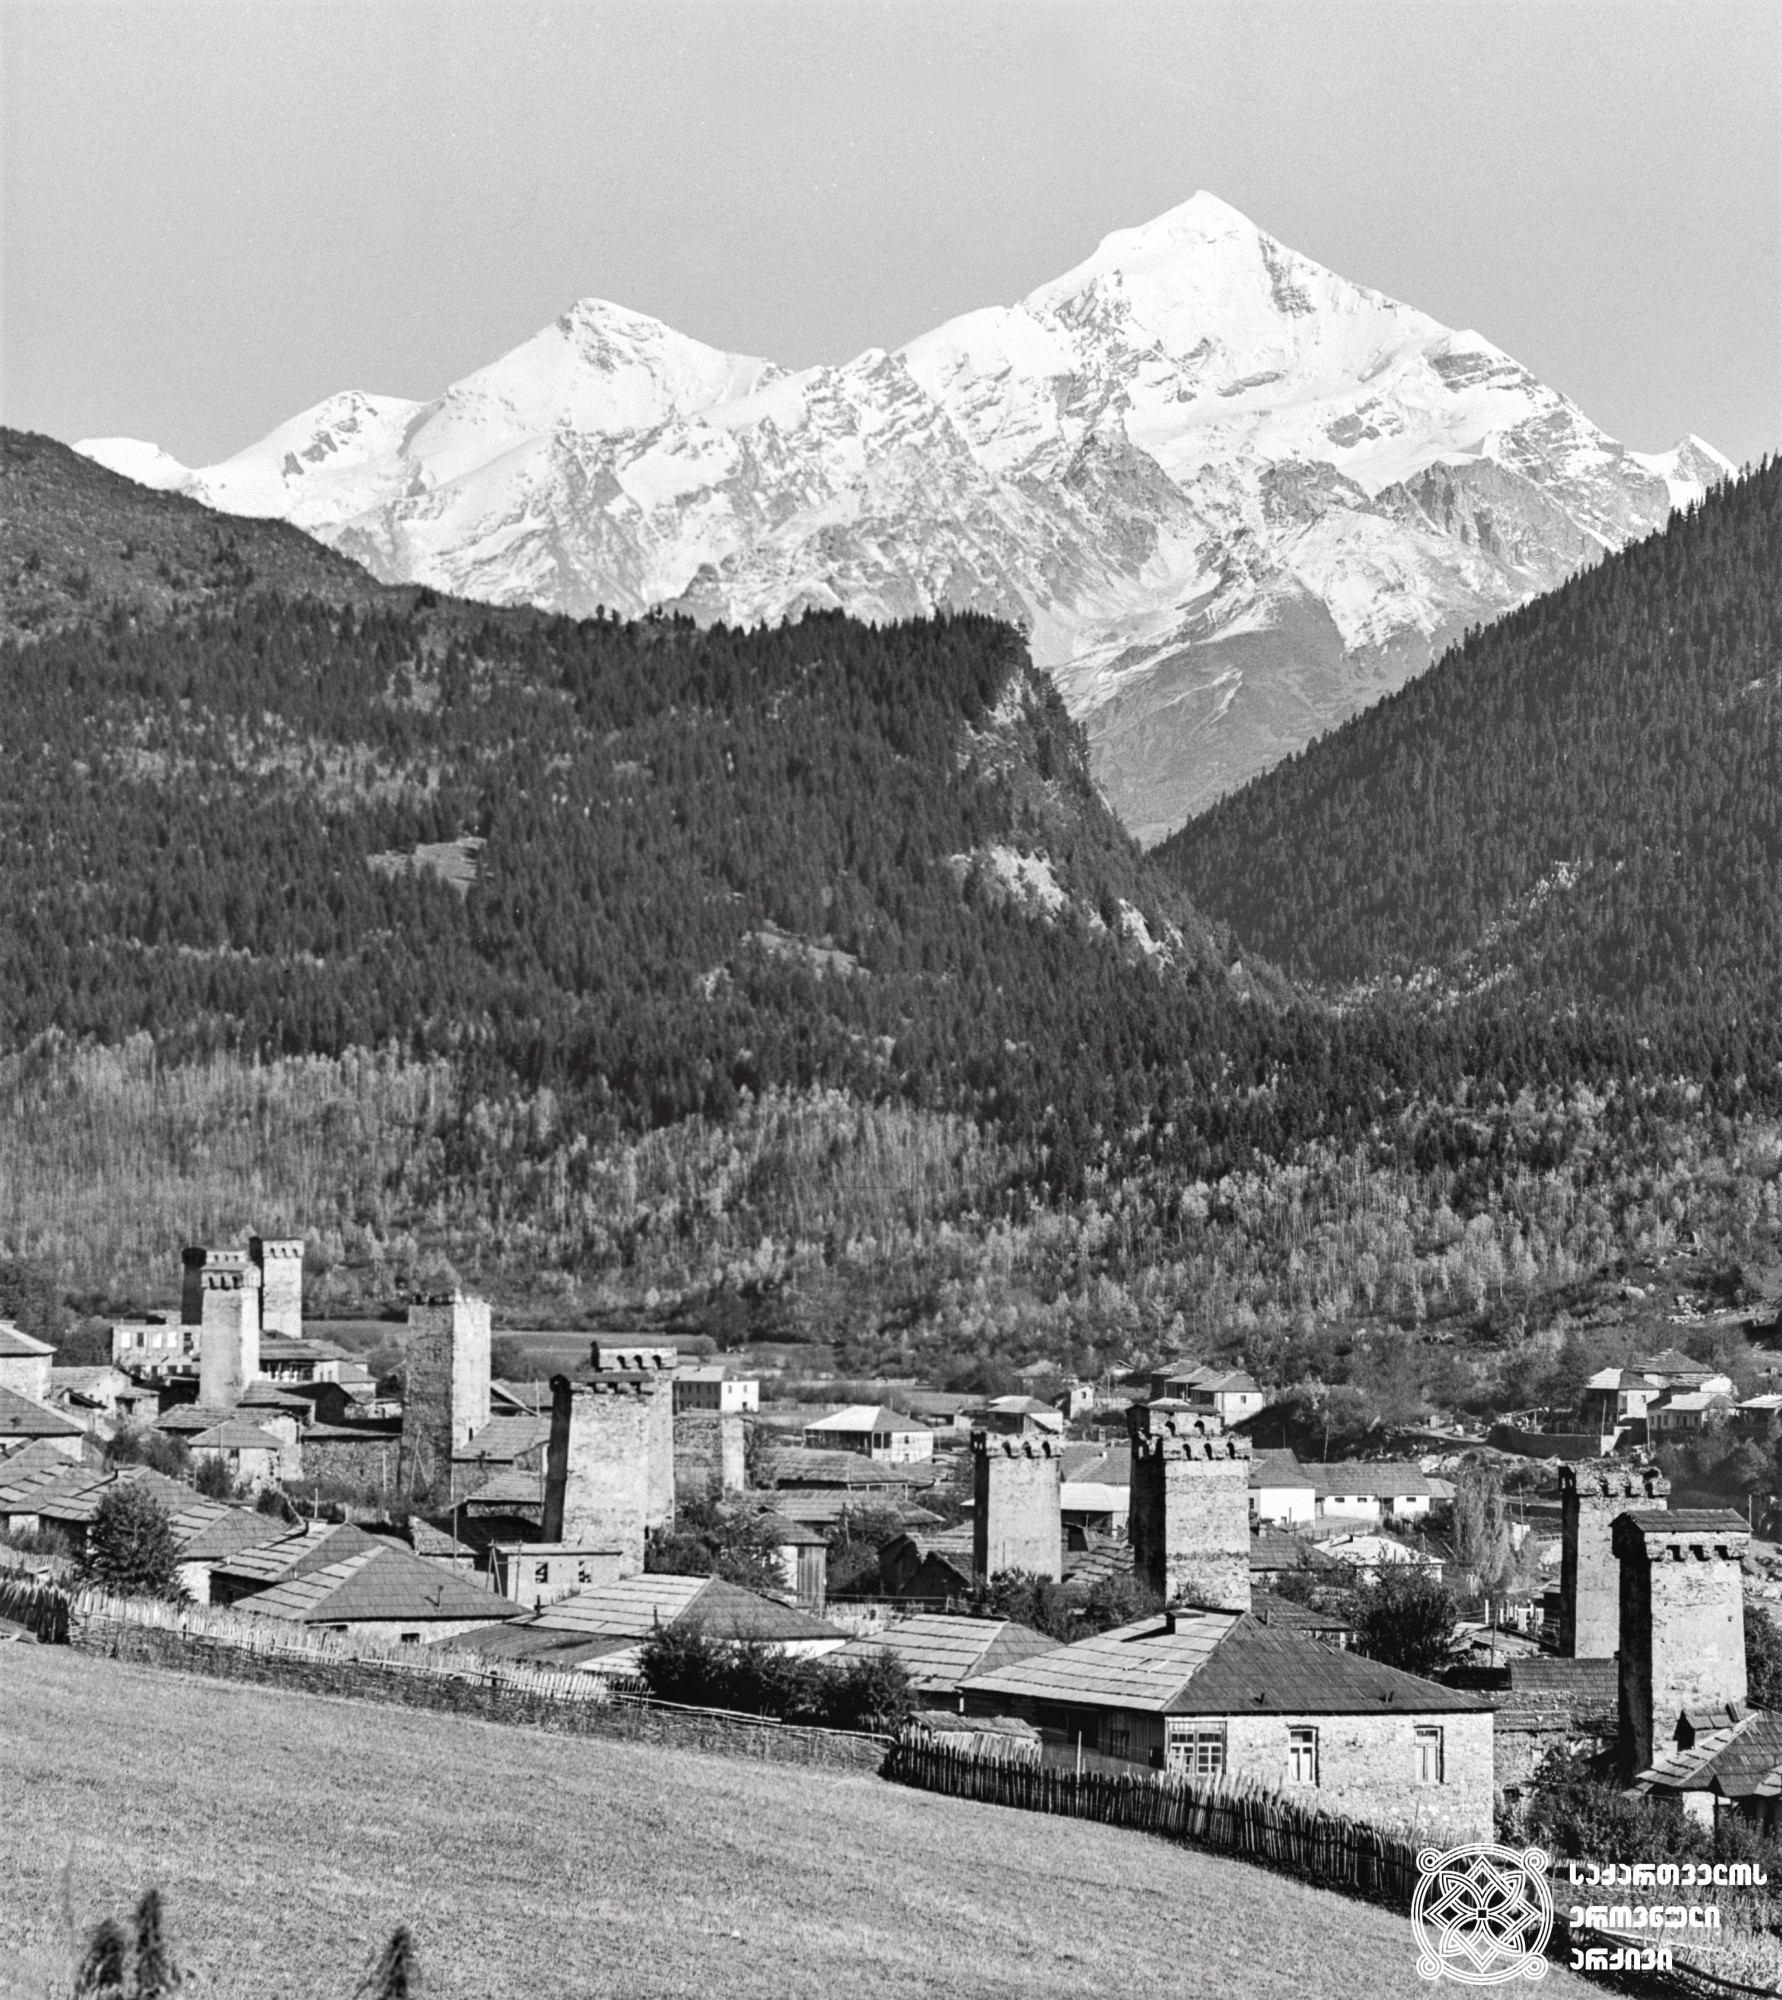 თეთნულდი. <br>
კავკასიონის მთავარი წყალგამყოფი ქედი. <br>
სიმაღლე – 4858 მ. <br>
სამეგრელო-ზემო სვანეთის მხარე, მესტიის მუნიციპალიტეტი. <br>
ფოტოს ავტორი – ირაკლი ჭოხონელიძე. <br>
1976 წელი. <br>
Tetnuldi. <br>
The main watershed of the Caucasus Mountains. <br>
Elevation – 4858 m. <br>
Samegrelo-Zemo Svaneti Region, Mestia Municipality. <br>
Photo by Irakli Chokhonelidze. <br>
1976.